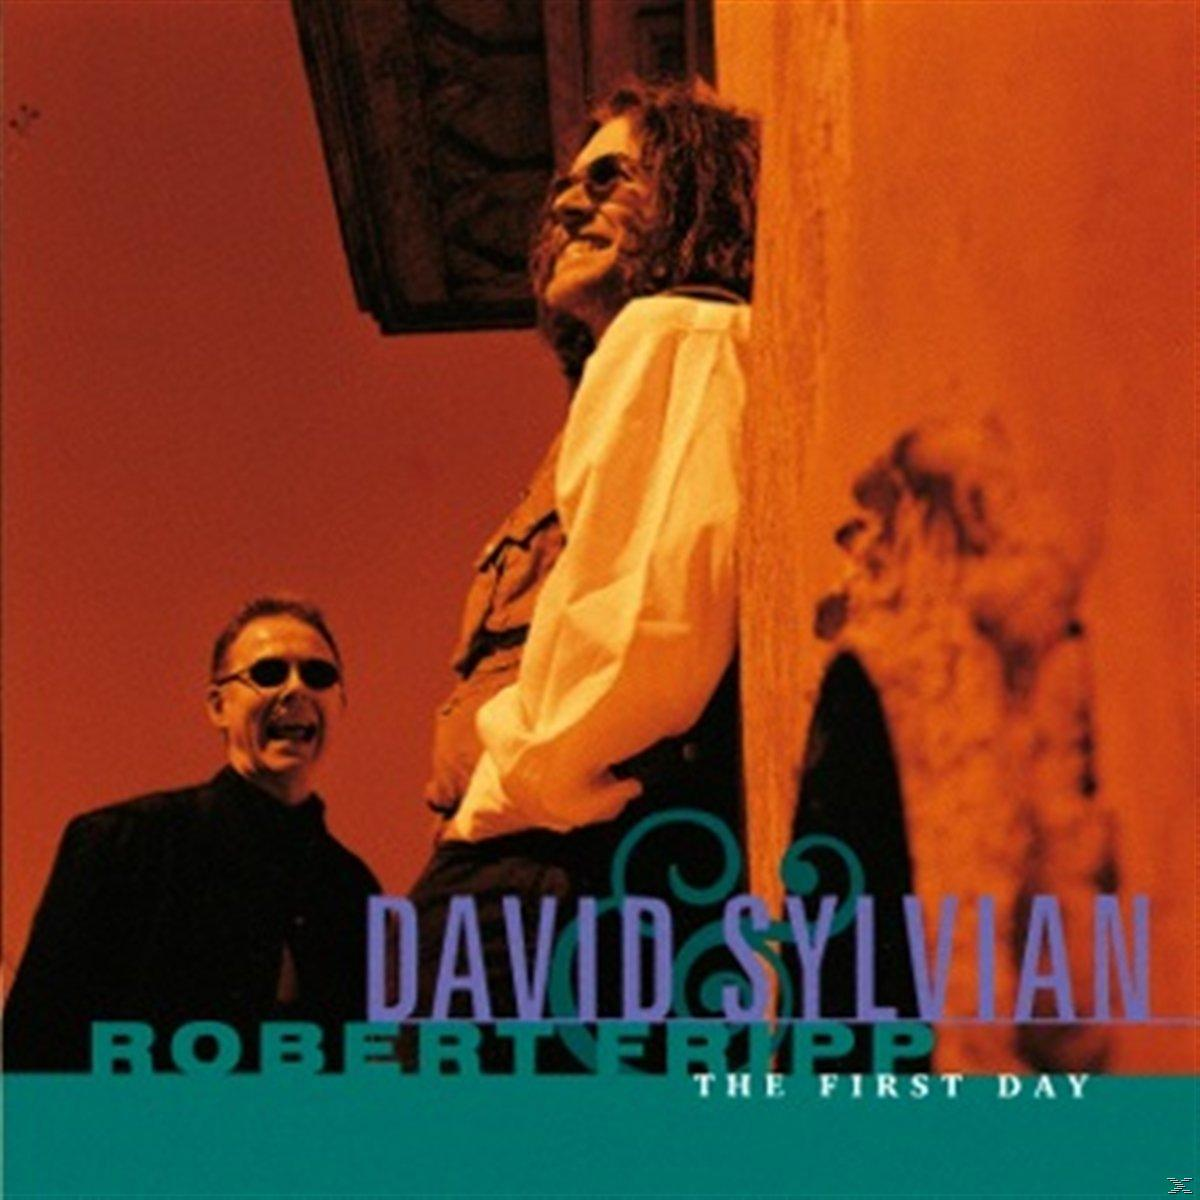 First David (CD) Sylvian, Robert The Day - - Fripp